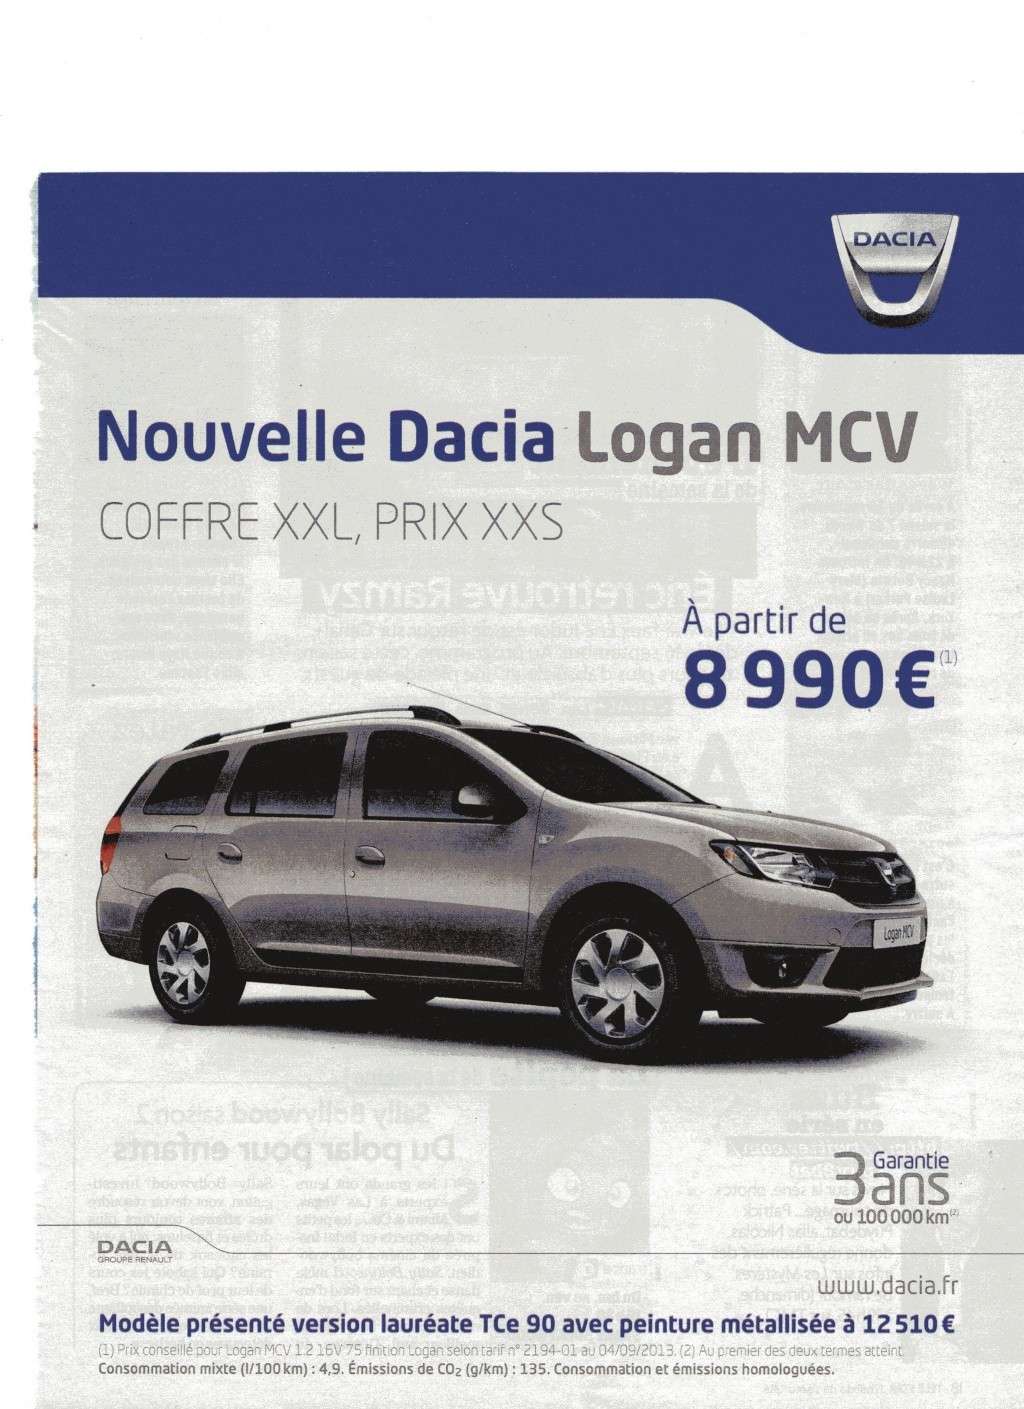 Présentation de la nouvelle Logan MCV, salon de Genève 2013 - Page 8 Img44710